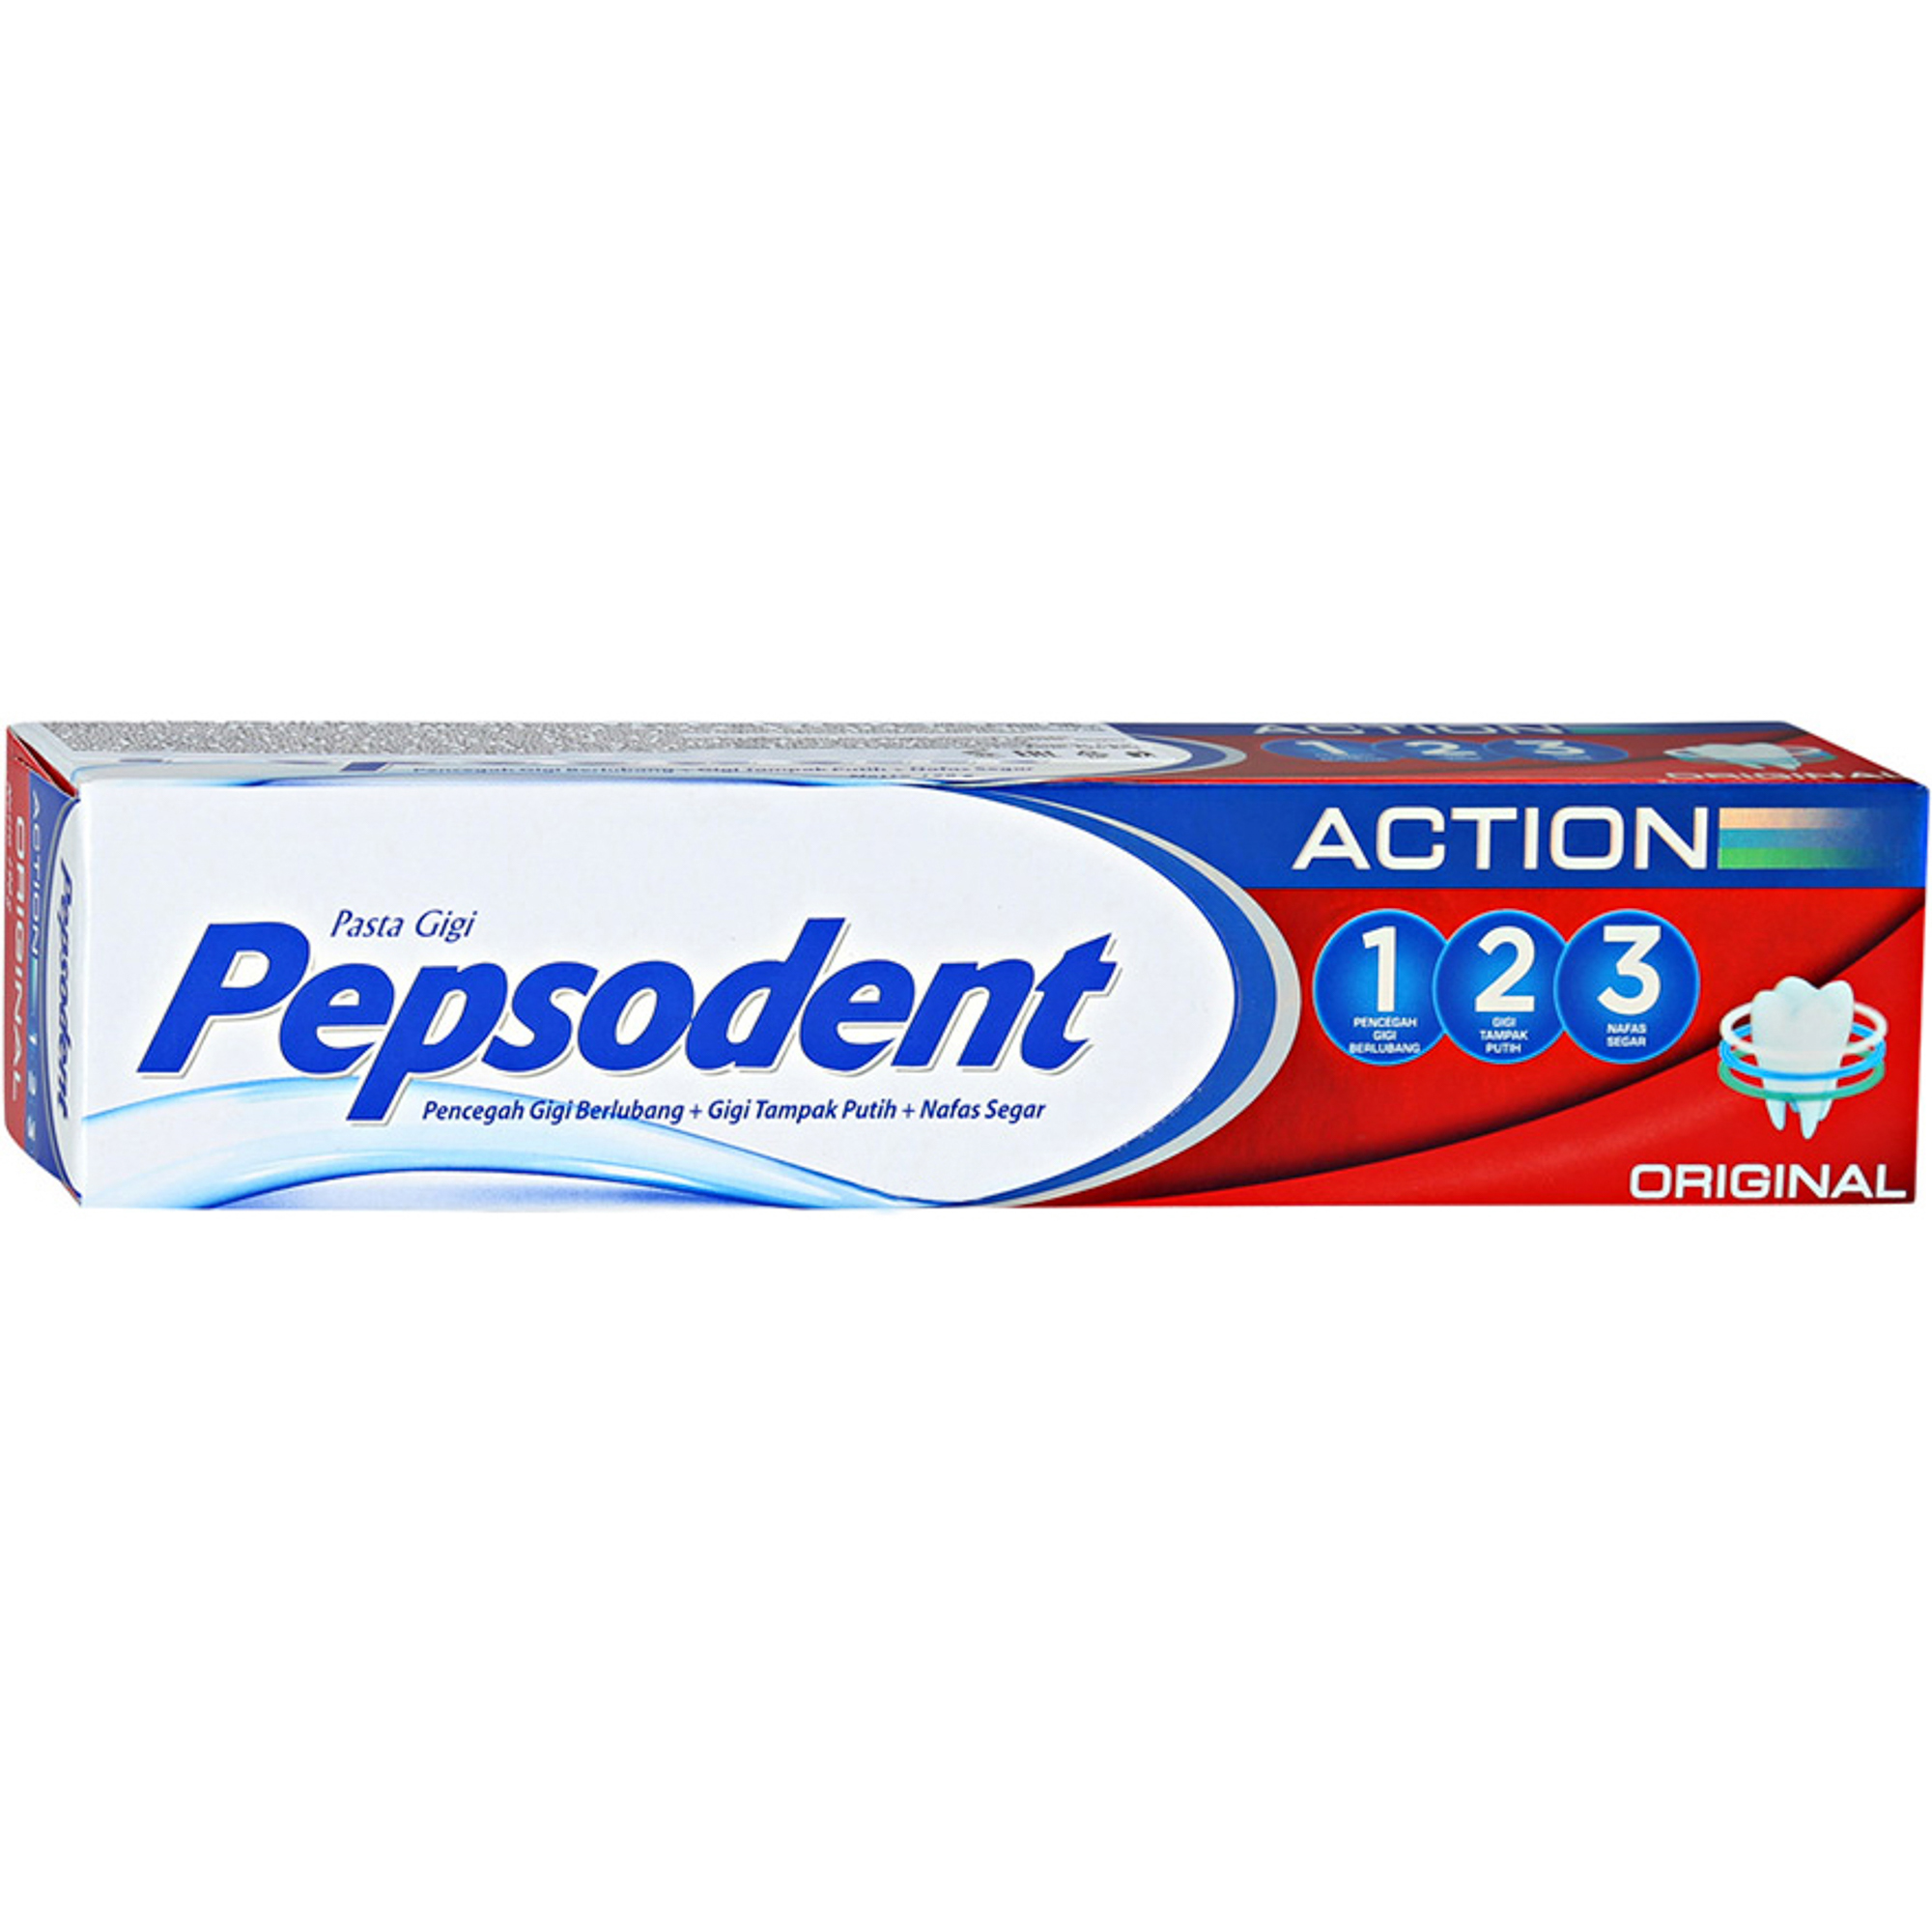 Зубная паста Pepsodent Action 123 Original 75 г, размер 16,5x3,6x3,1 см 20288832 - фото 1